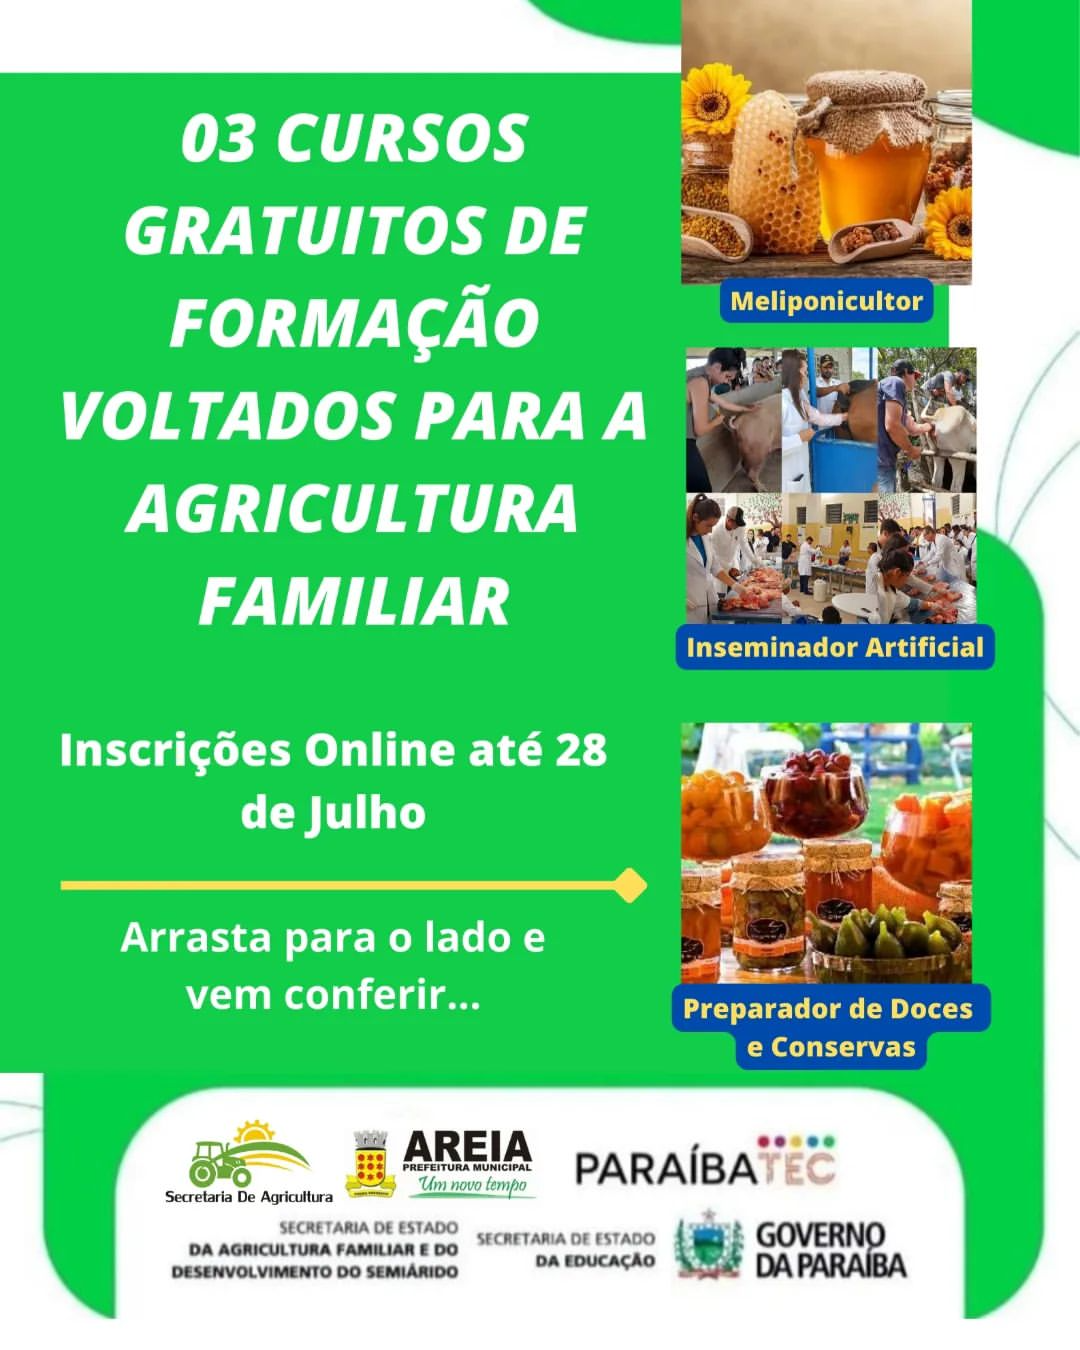 Parceria entre Secretaria de Agricultura de Areia e ParaibaTEC oferece 3 cursos profissionalizantes para agricultores e familiares